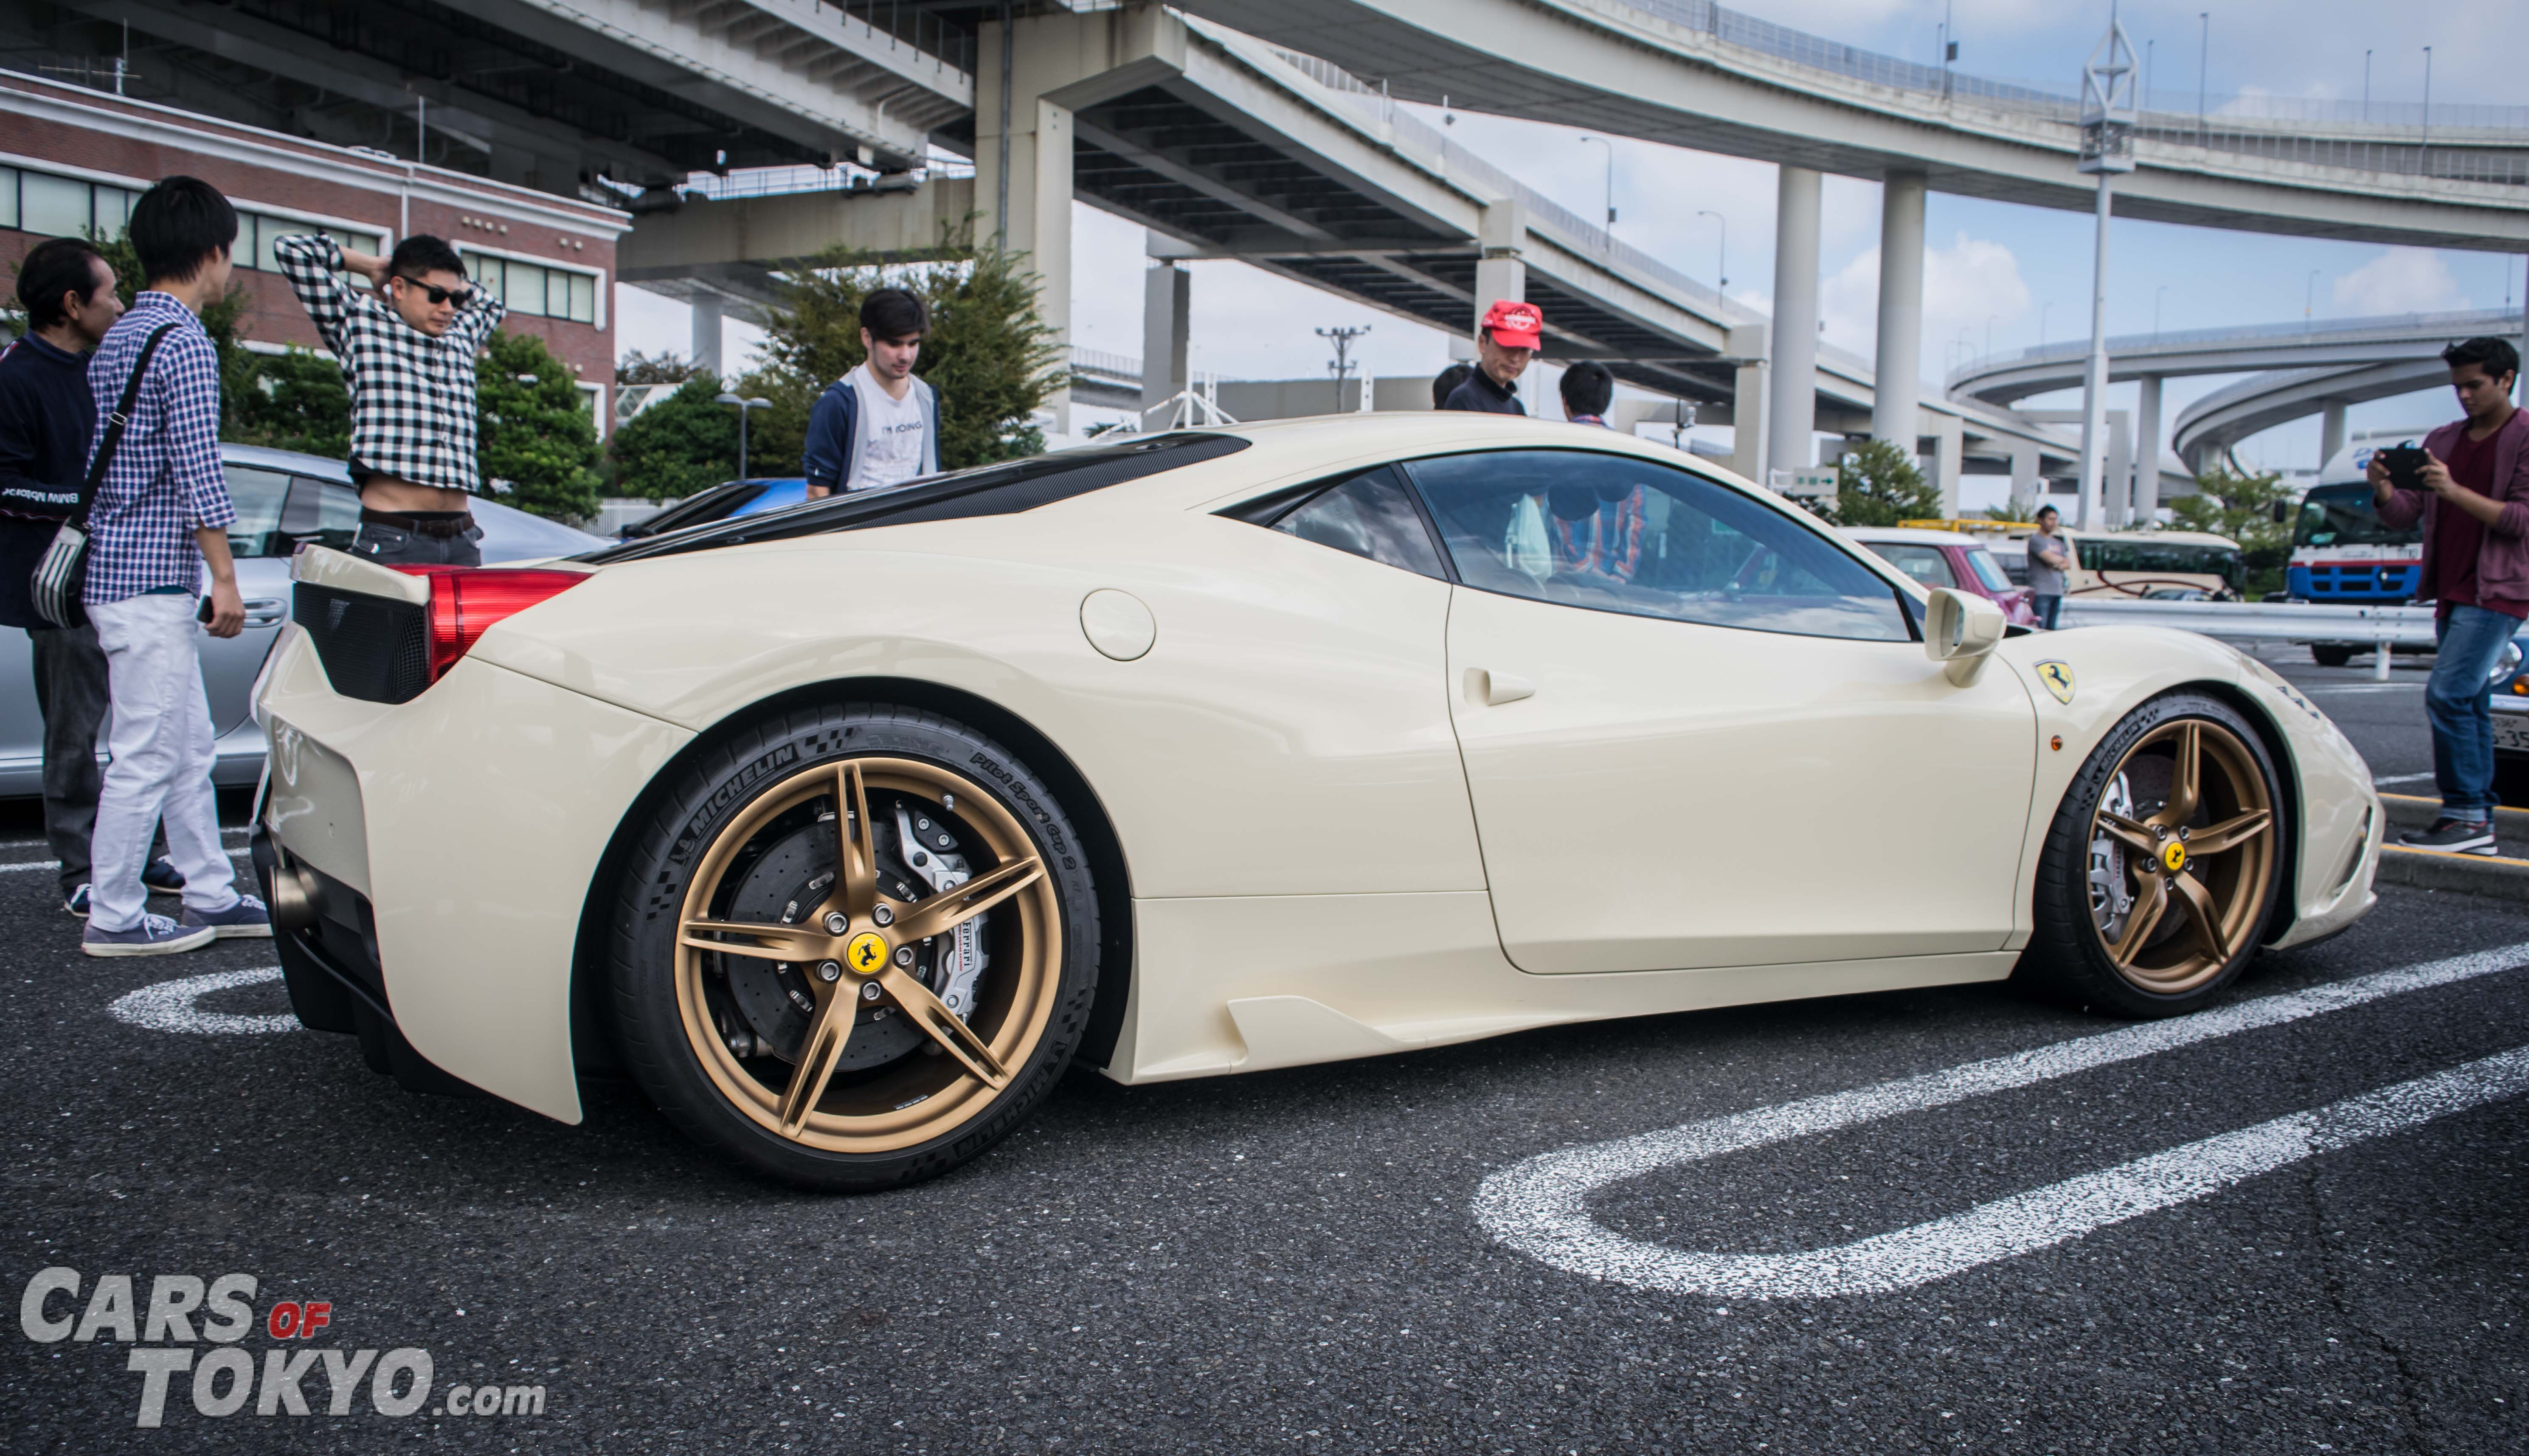 Cars of Tokyo Unusual Spec Ferrari 458 Speciale